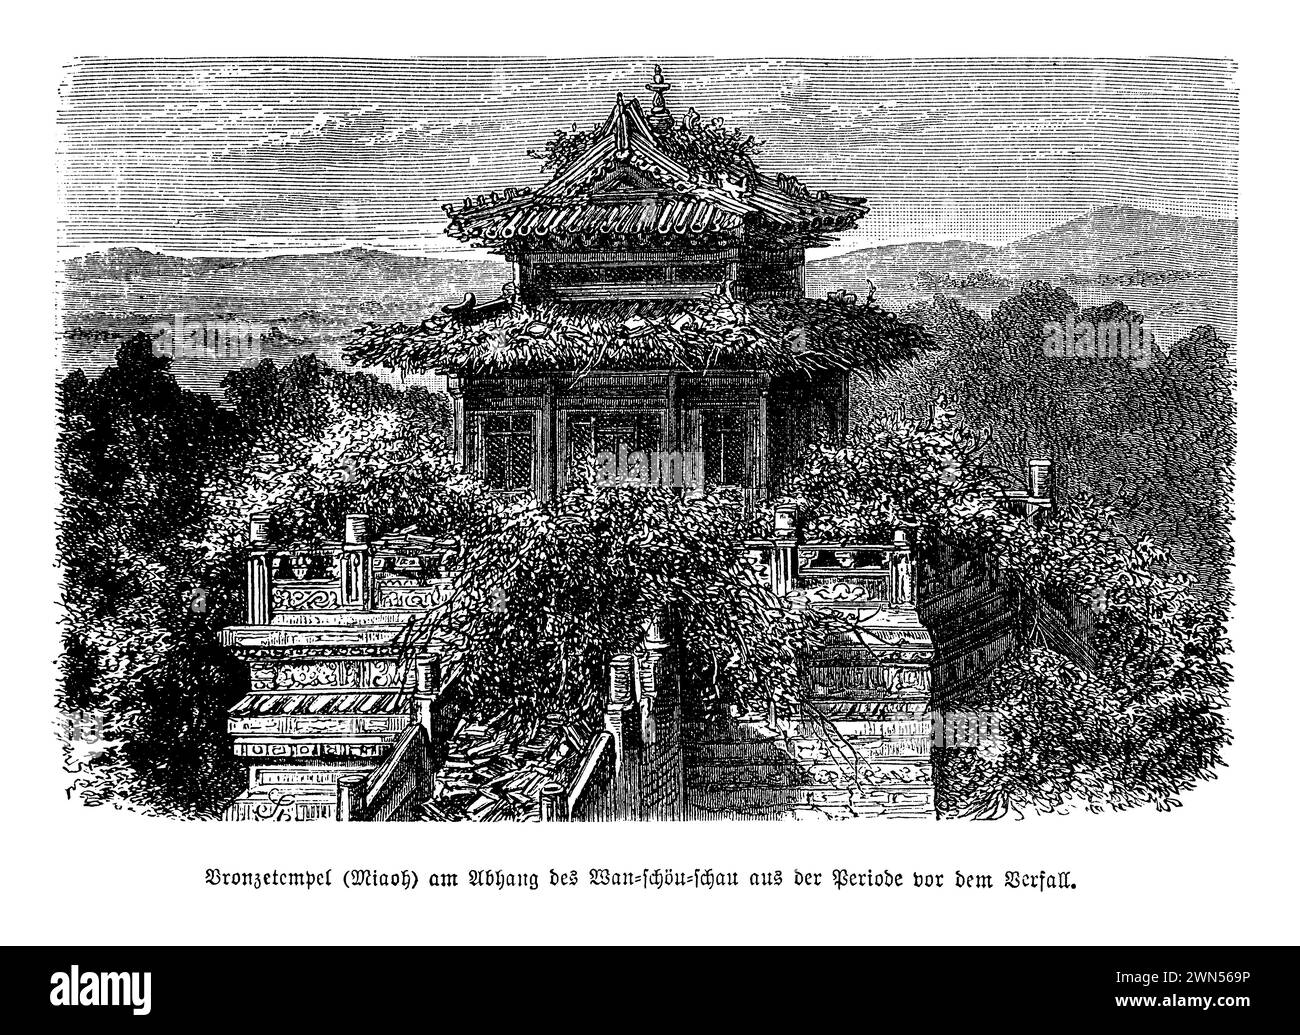 Le temple de bronze, situé dans les vestiges du Yuen-Ming-Yuen (ancien palais impérial d'été) à Wan-Show-Shan près de Pékin, représente un artefact unique de grandeur impériale chinoise et d'art. Construit entièrement en bronze, ce temple témoigne des compétences métallurgiques avancées et de la vision artistique de la dynastie Qing. Il a survécu à la destruction du Palais d'été en 1860 lors de la seconde Guerre de l'opium, un rappel poignant de la résilience culturelle au milieu des turbulences historiques. Banque D'Images